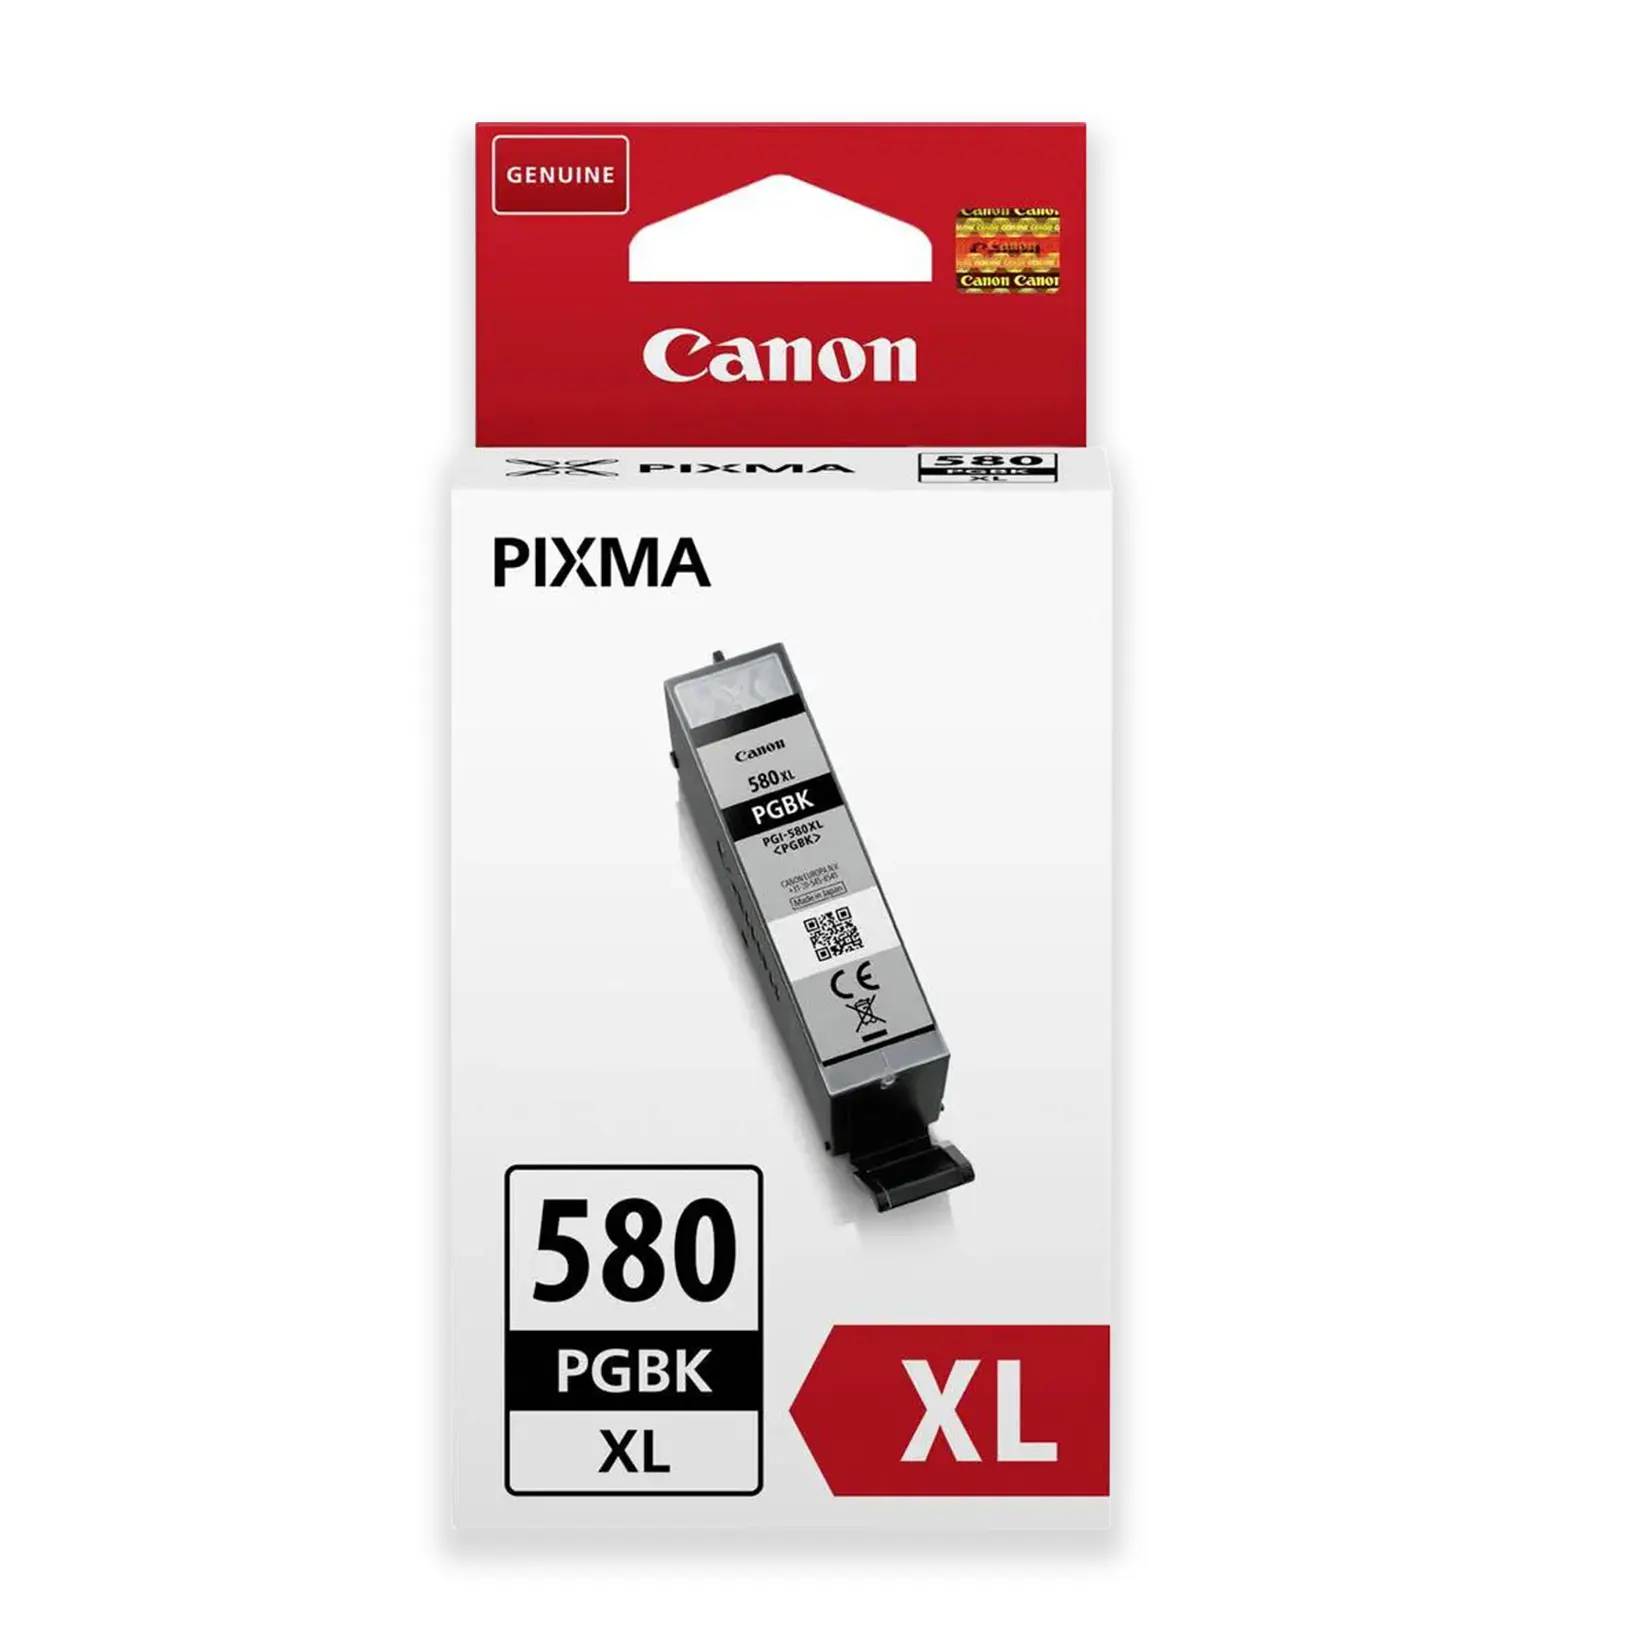 Canon PGI-580 XL PGBK Kertridž Original Black Crni